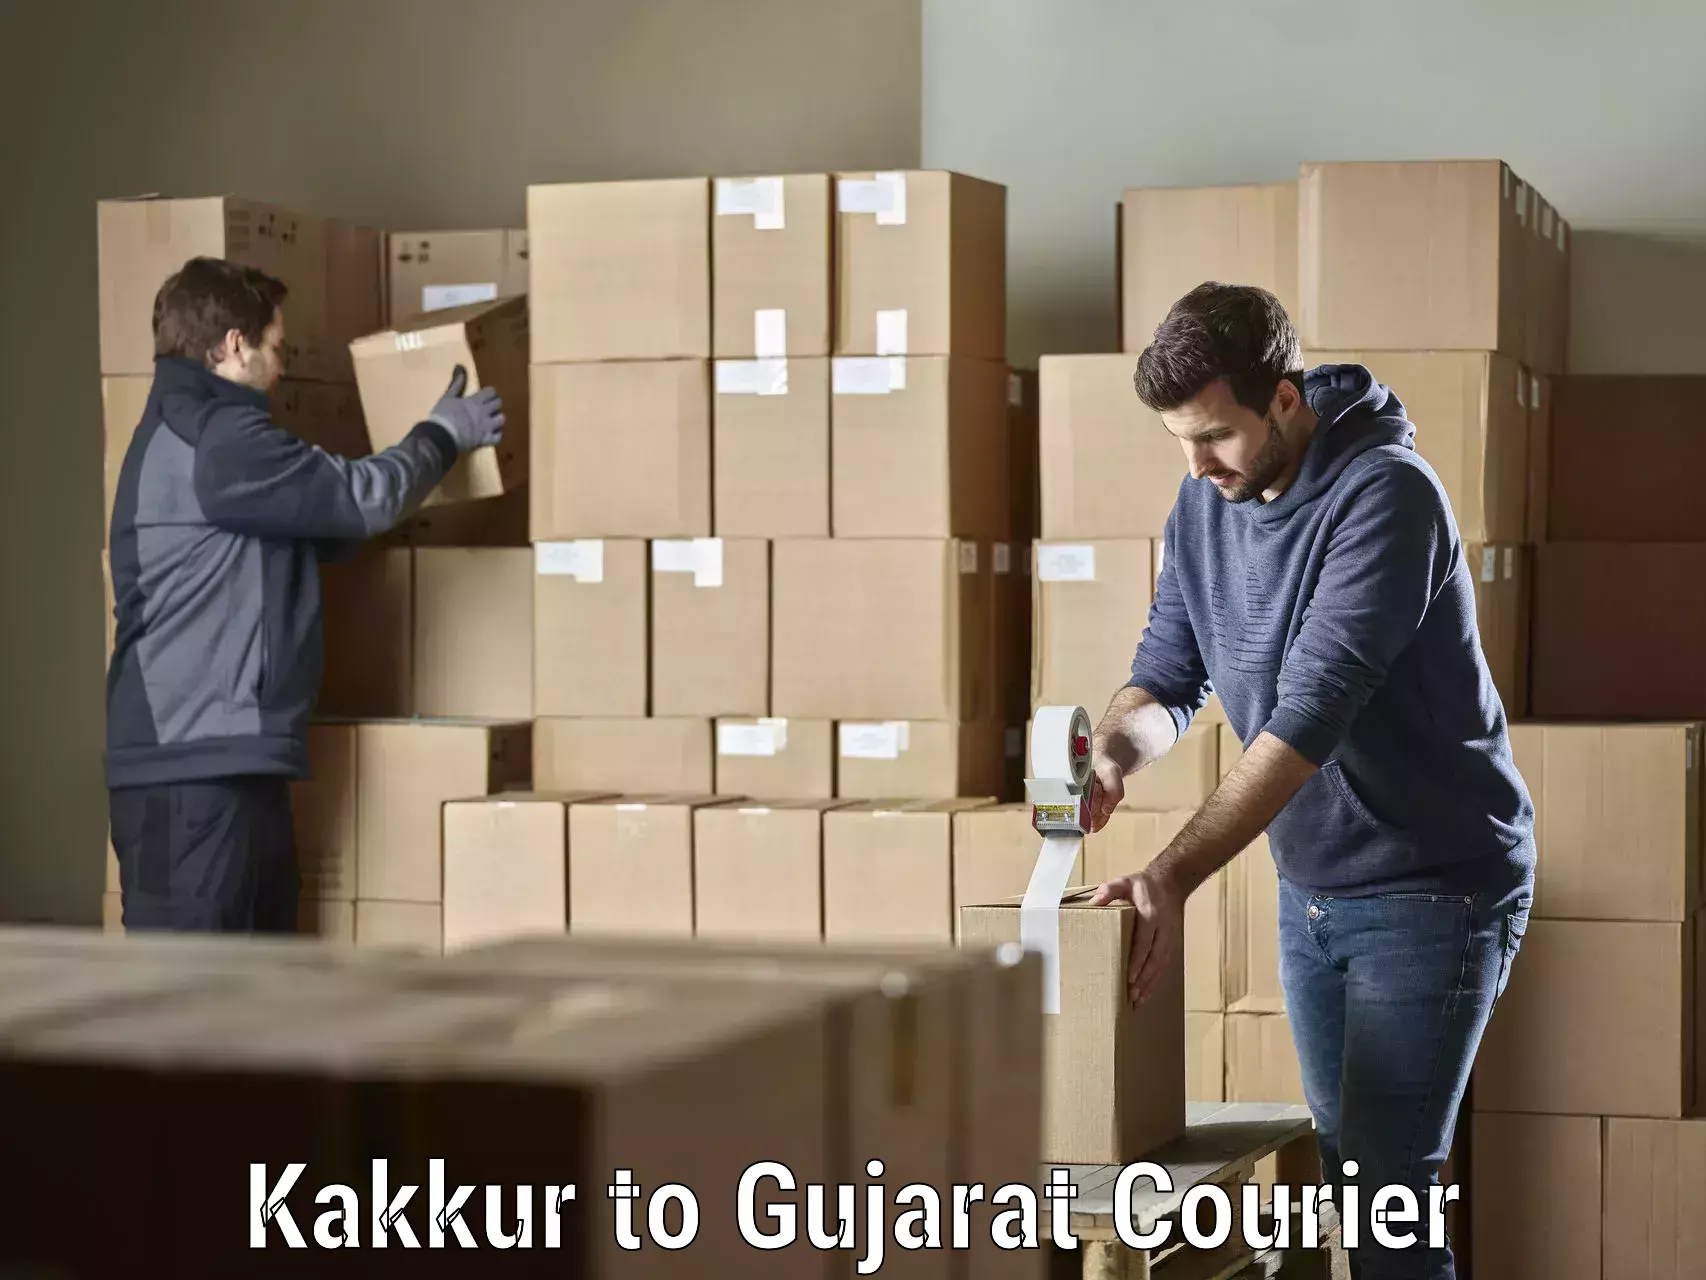 Urgent courier needs Kakkur to Radhanpur